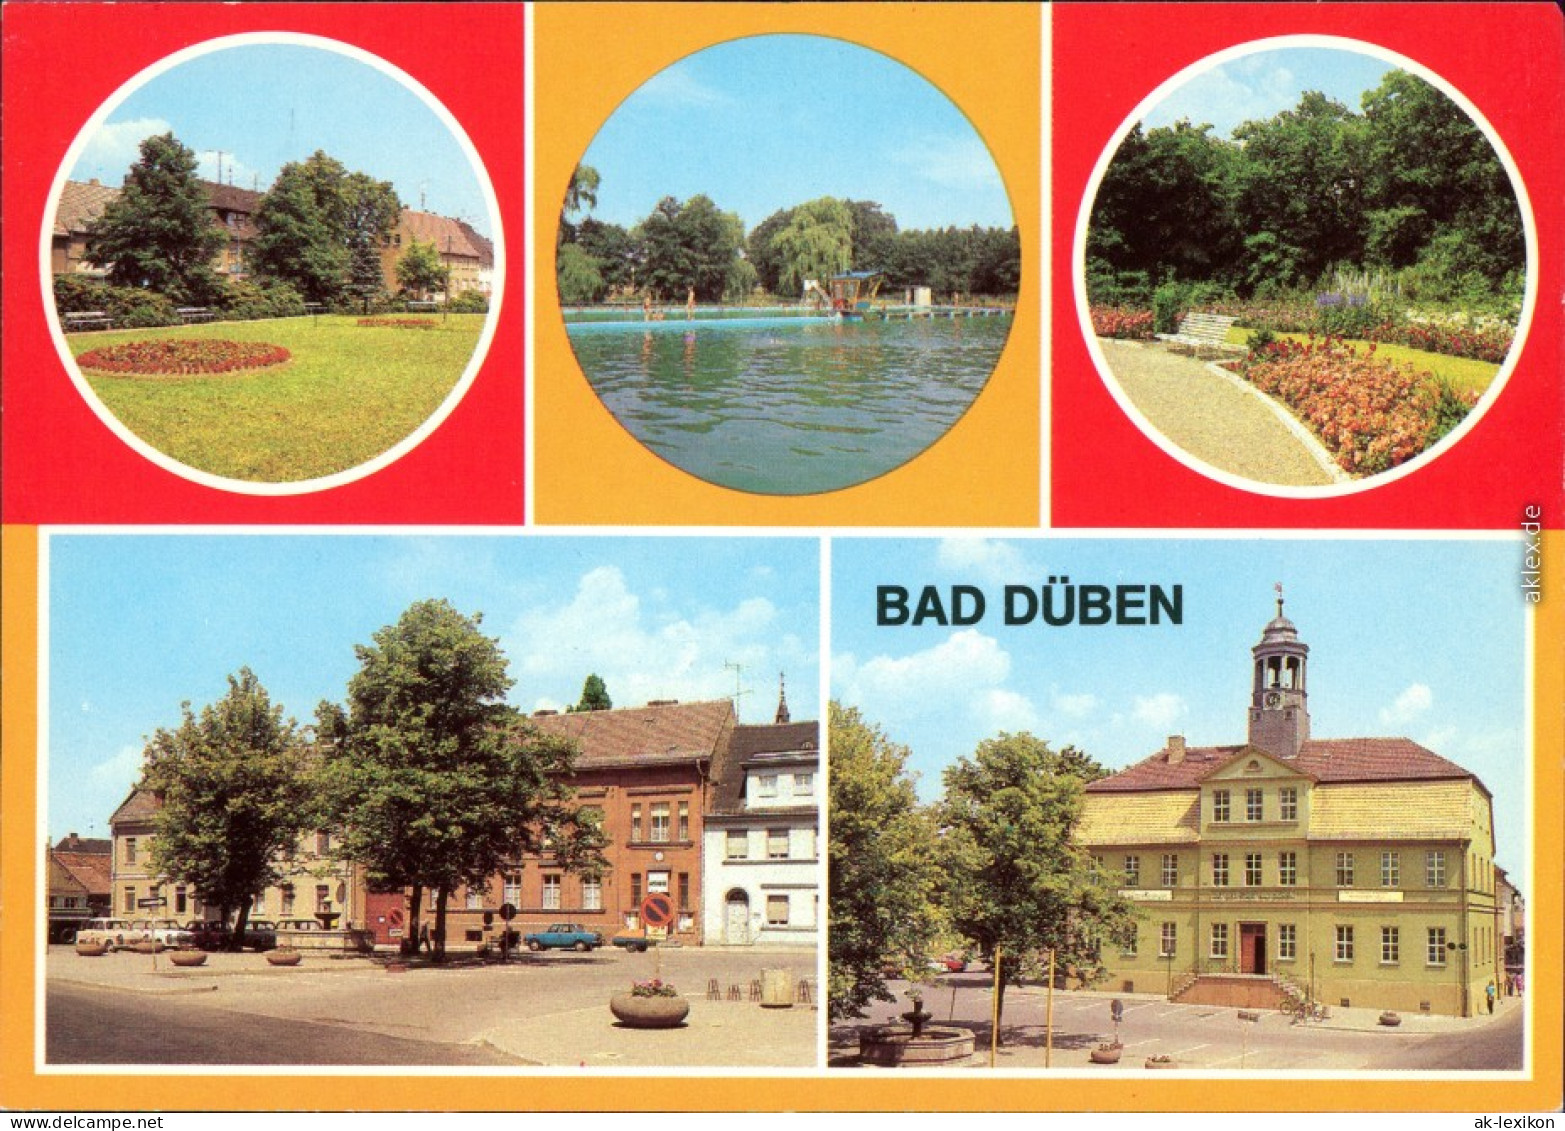 Bad Düben Platz Der Jugend, Waldbad Hammermühle, Kurpark, Marktplatz,  1981 - Bad Düben